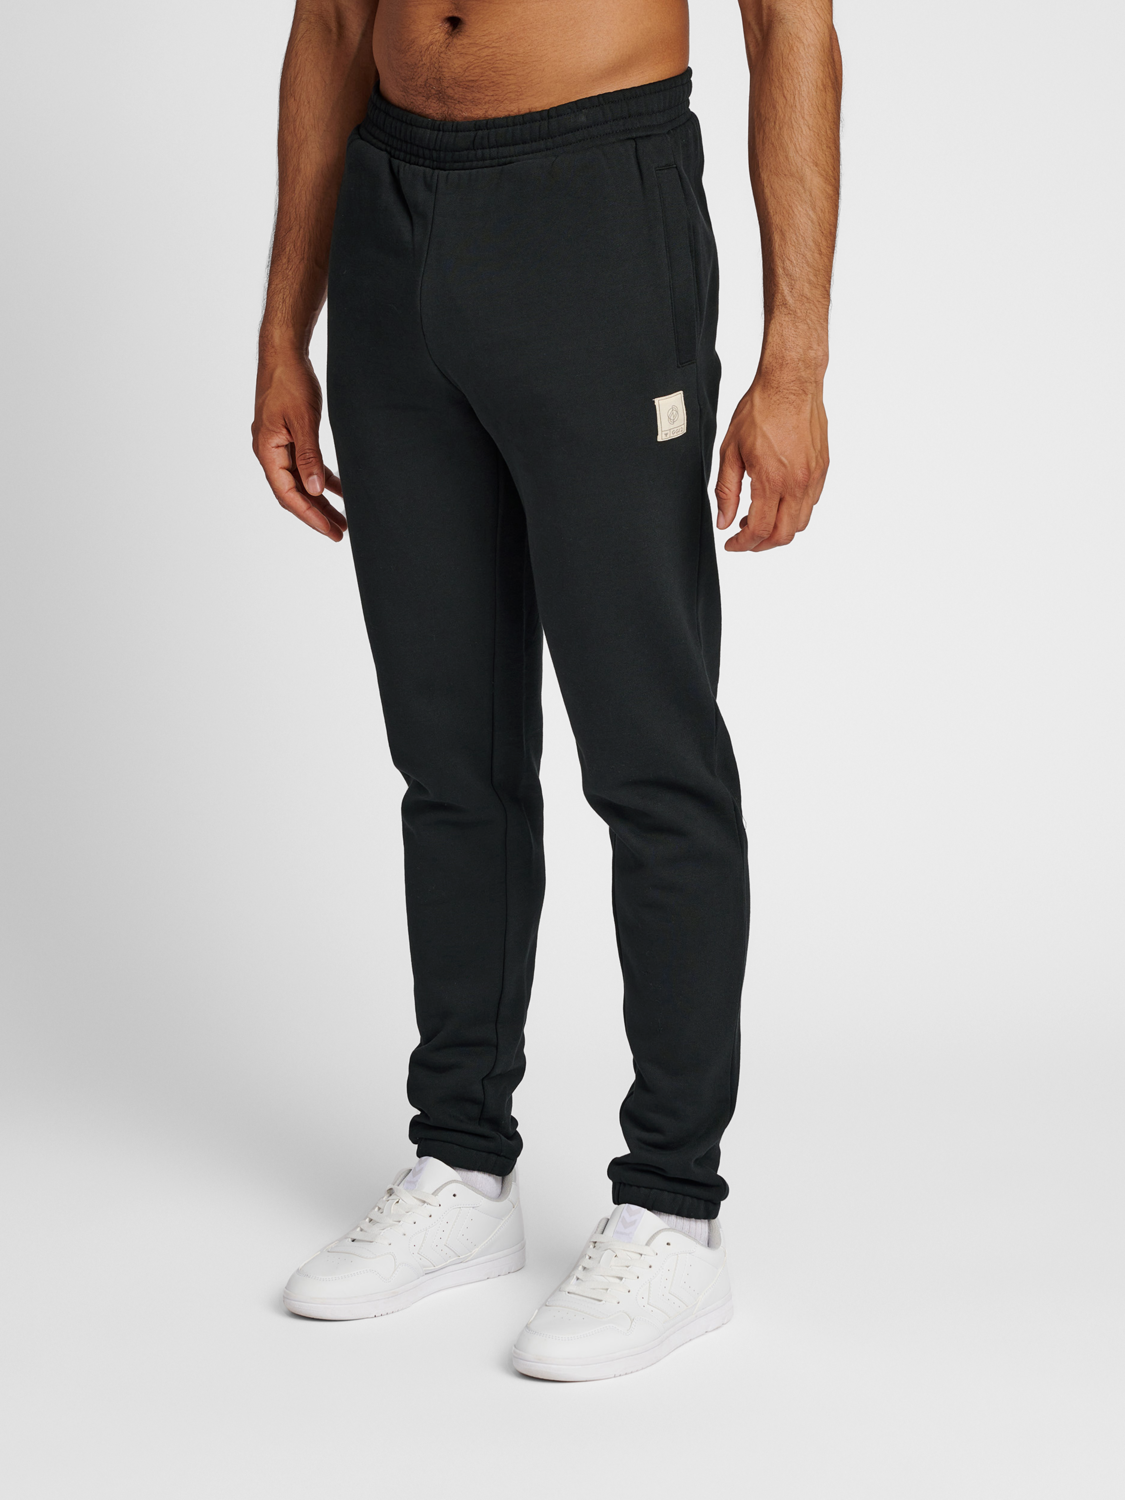 Black Nike tracksuit bottoms,, jogging bottoms, men's branded designer –  System F